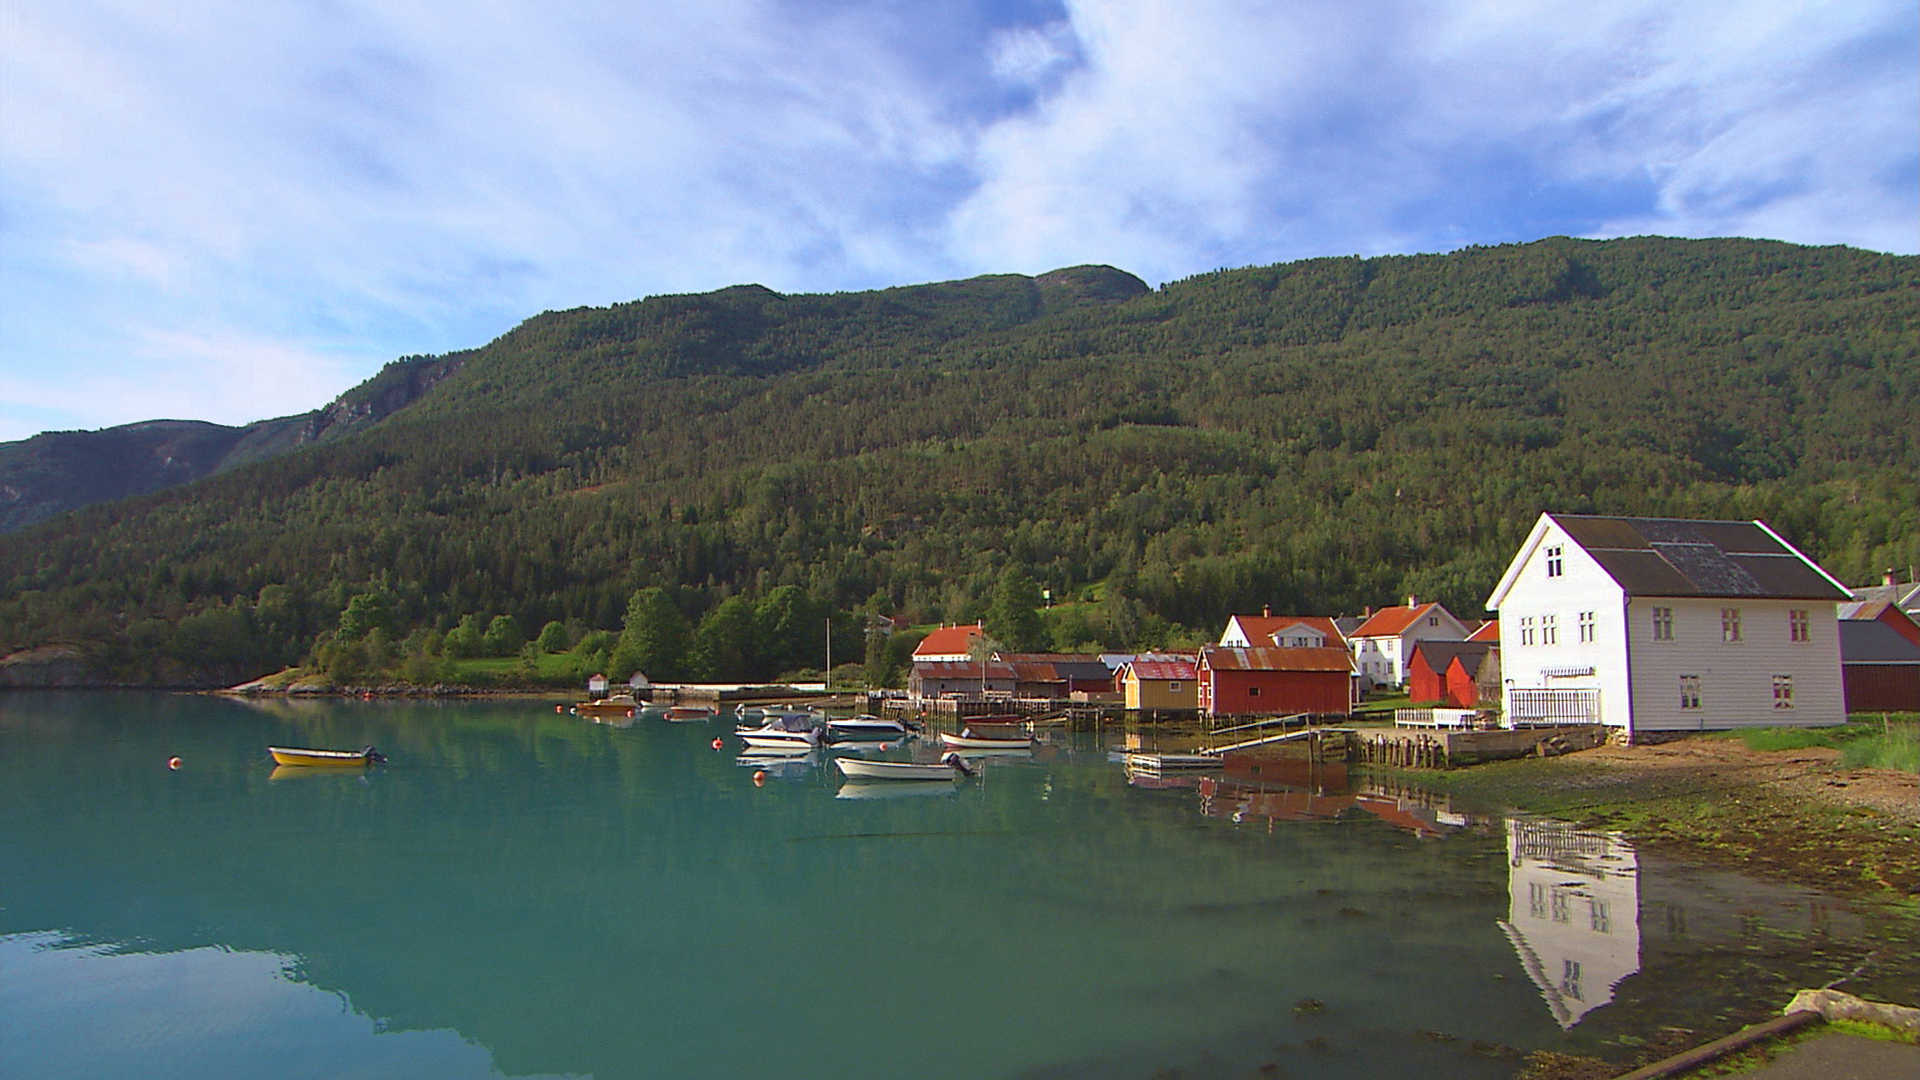 Solvorn, in western Norway